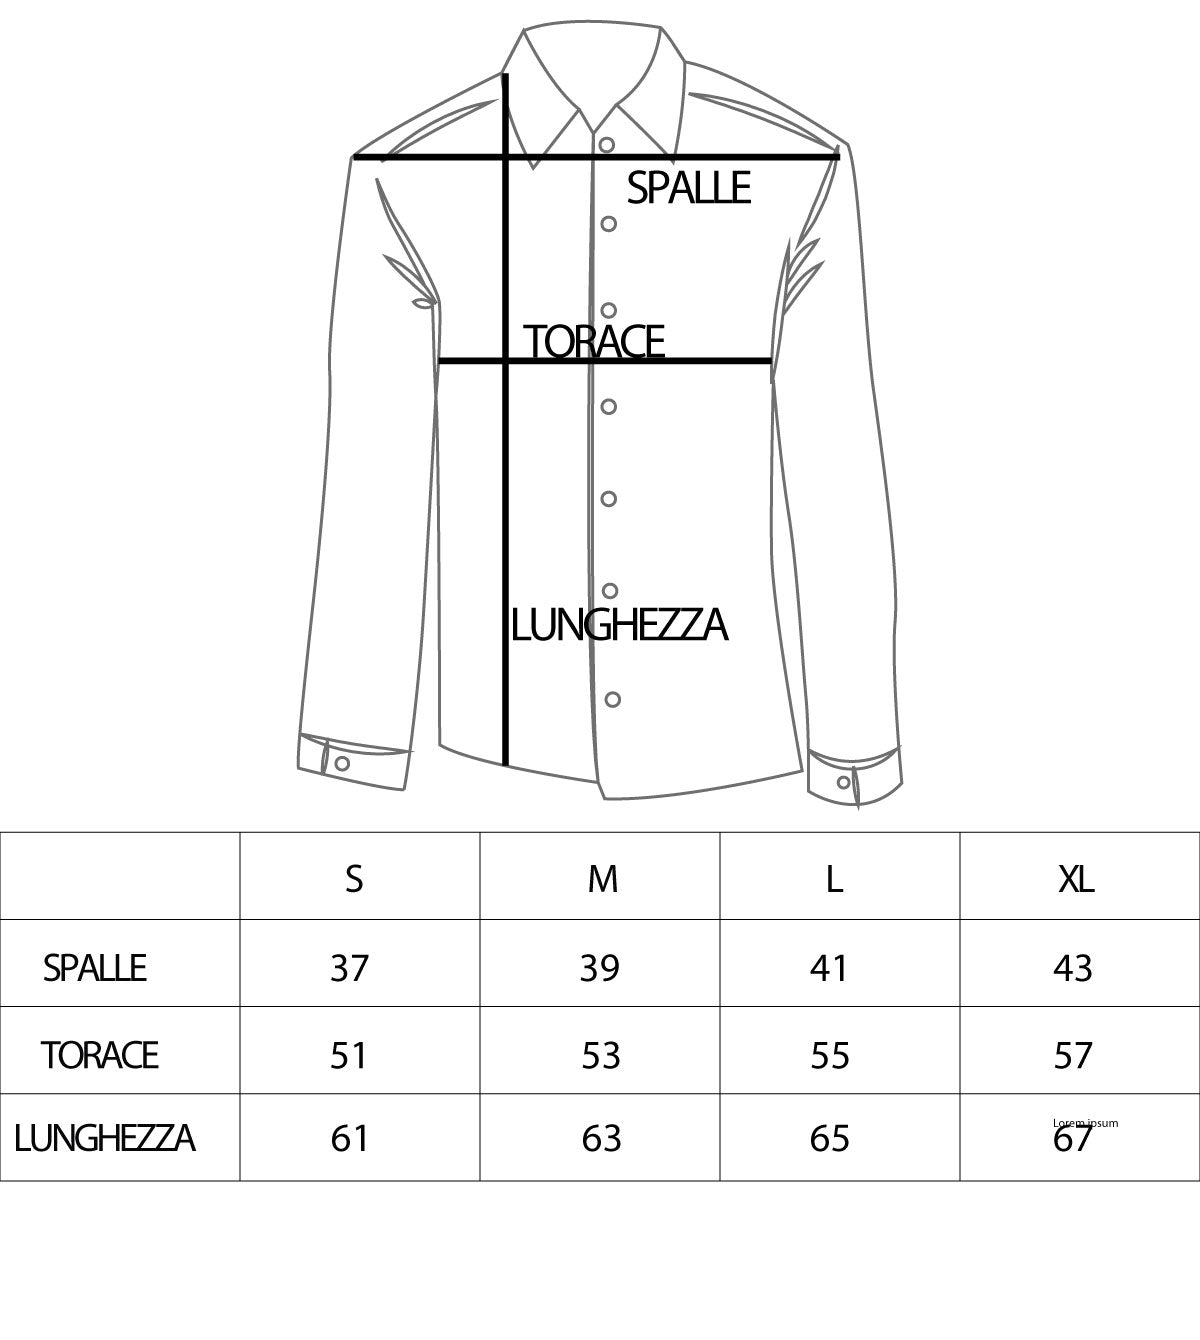 Camicia Uomo Con Colletto Manica Lunga Casual Cotone Etnica GIOSAL-C1859A